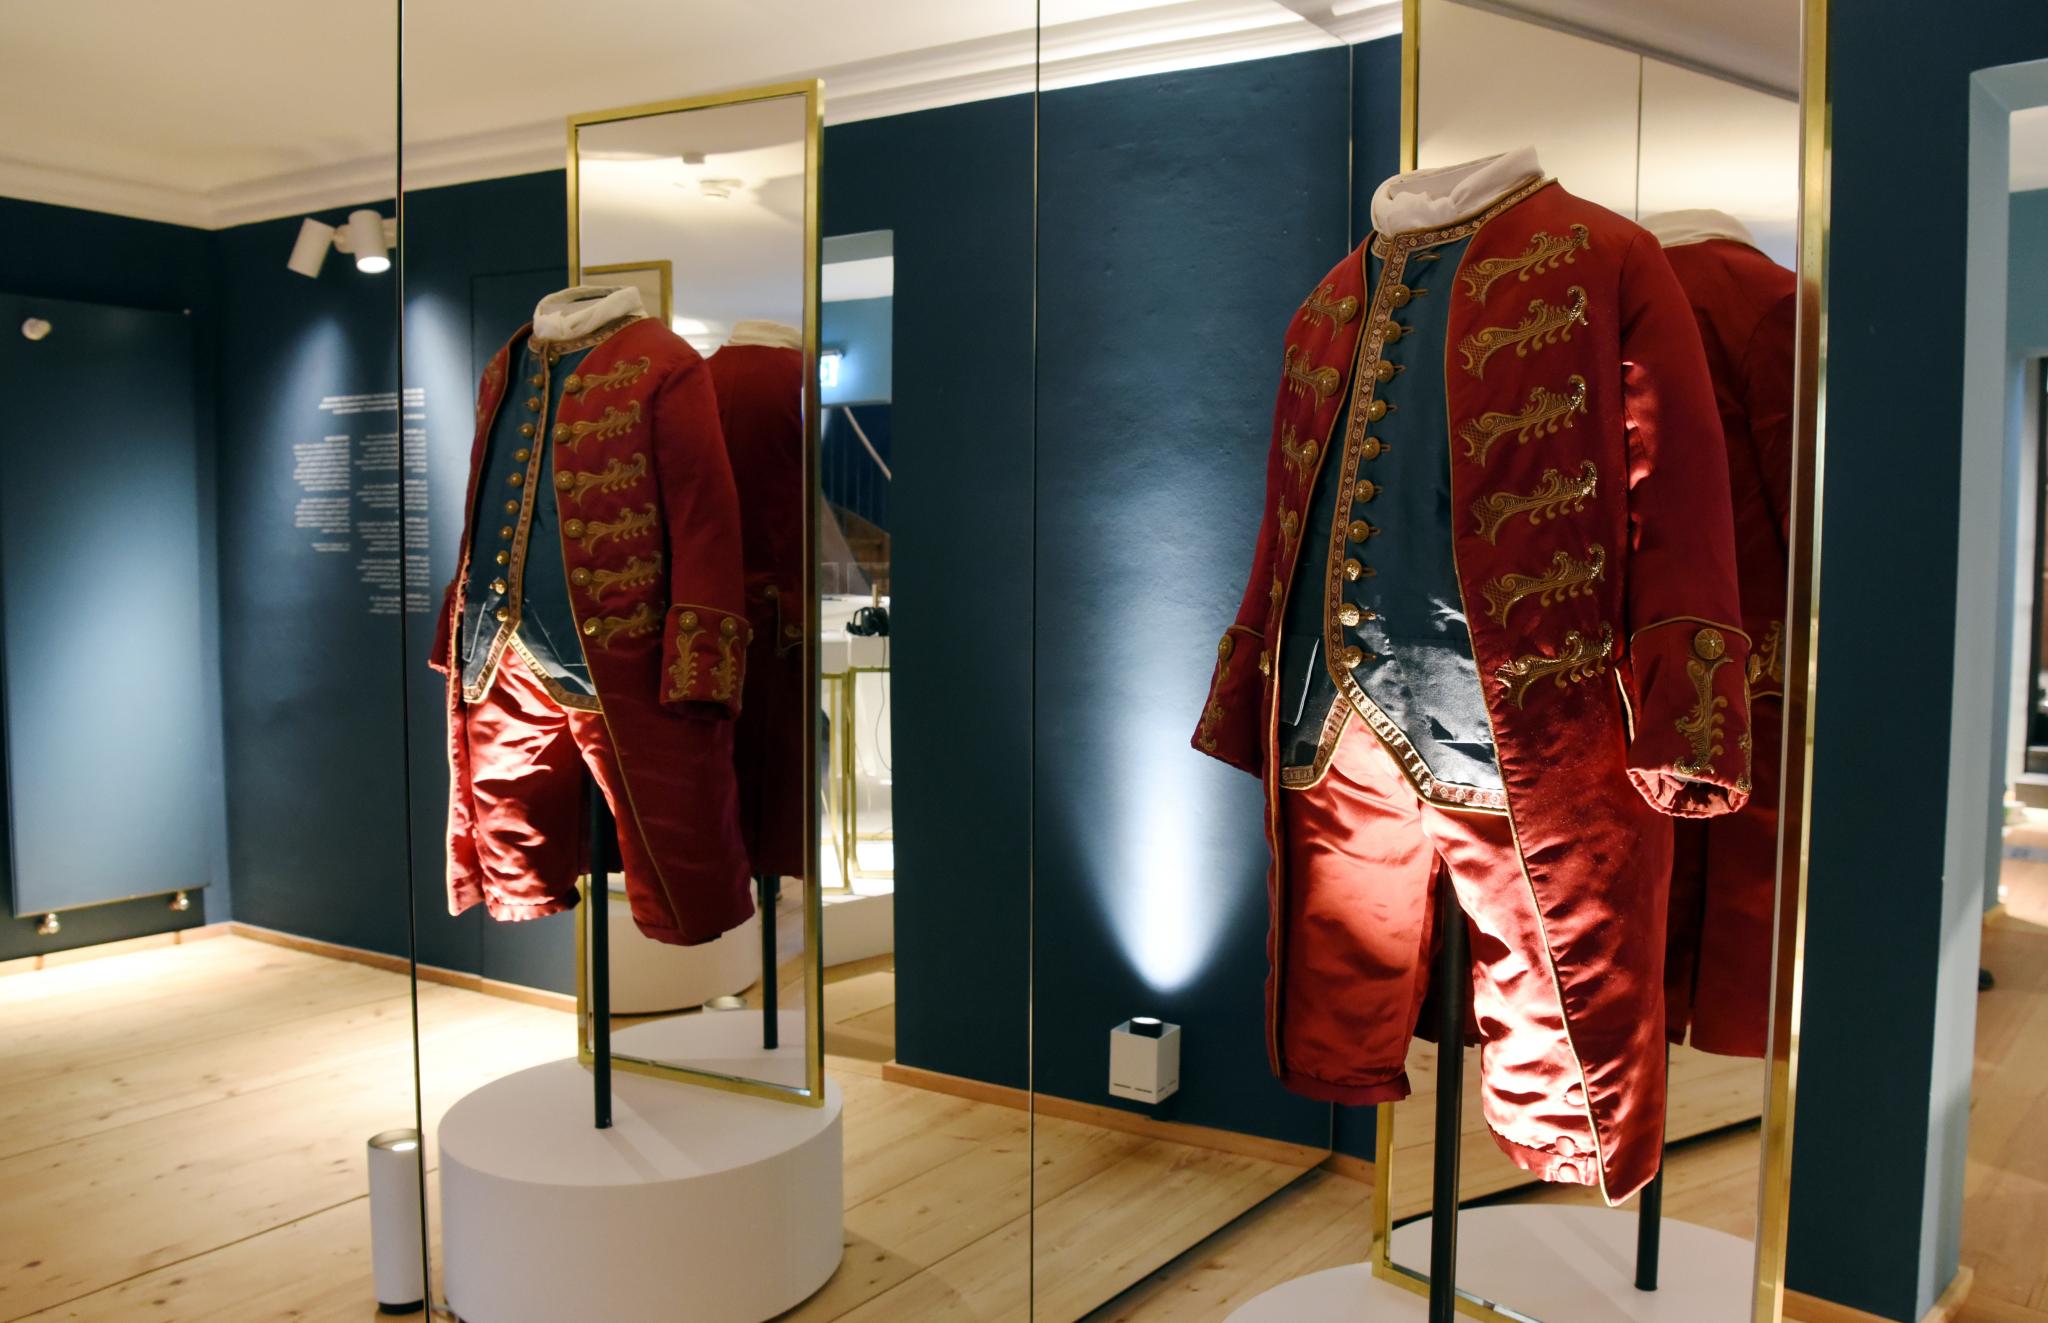 Nachgestaltete Anzüge, wie Leopold Mozart sie getragen haben könnte